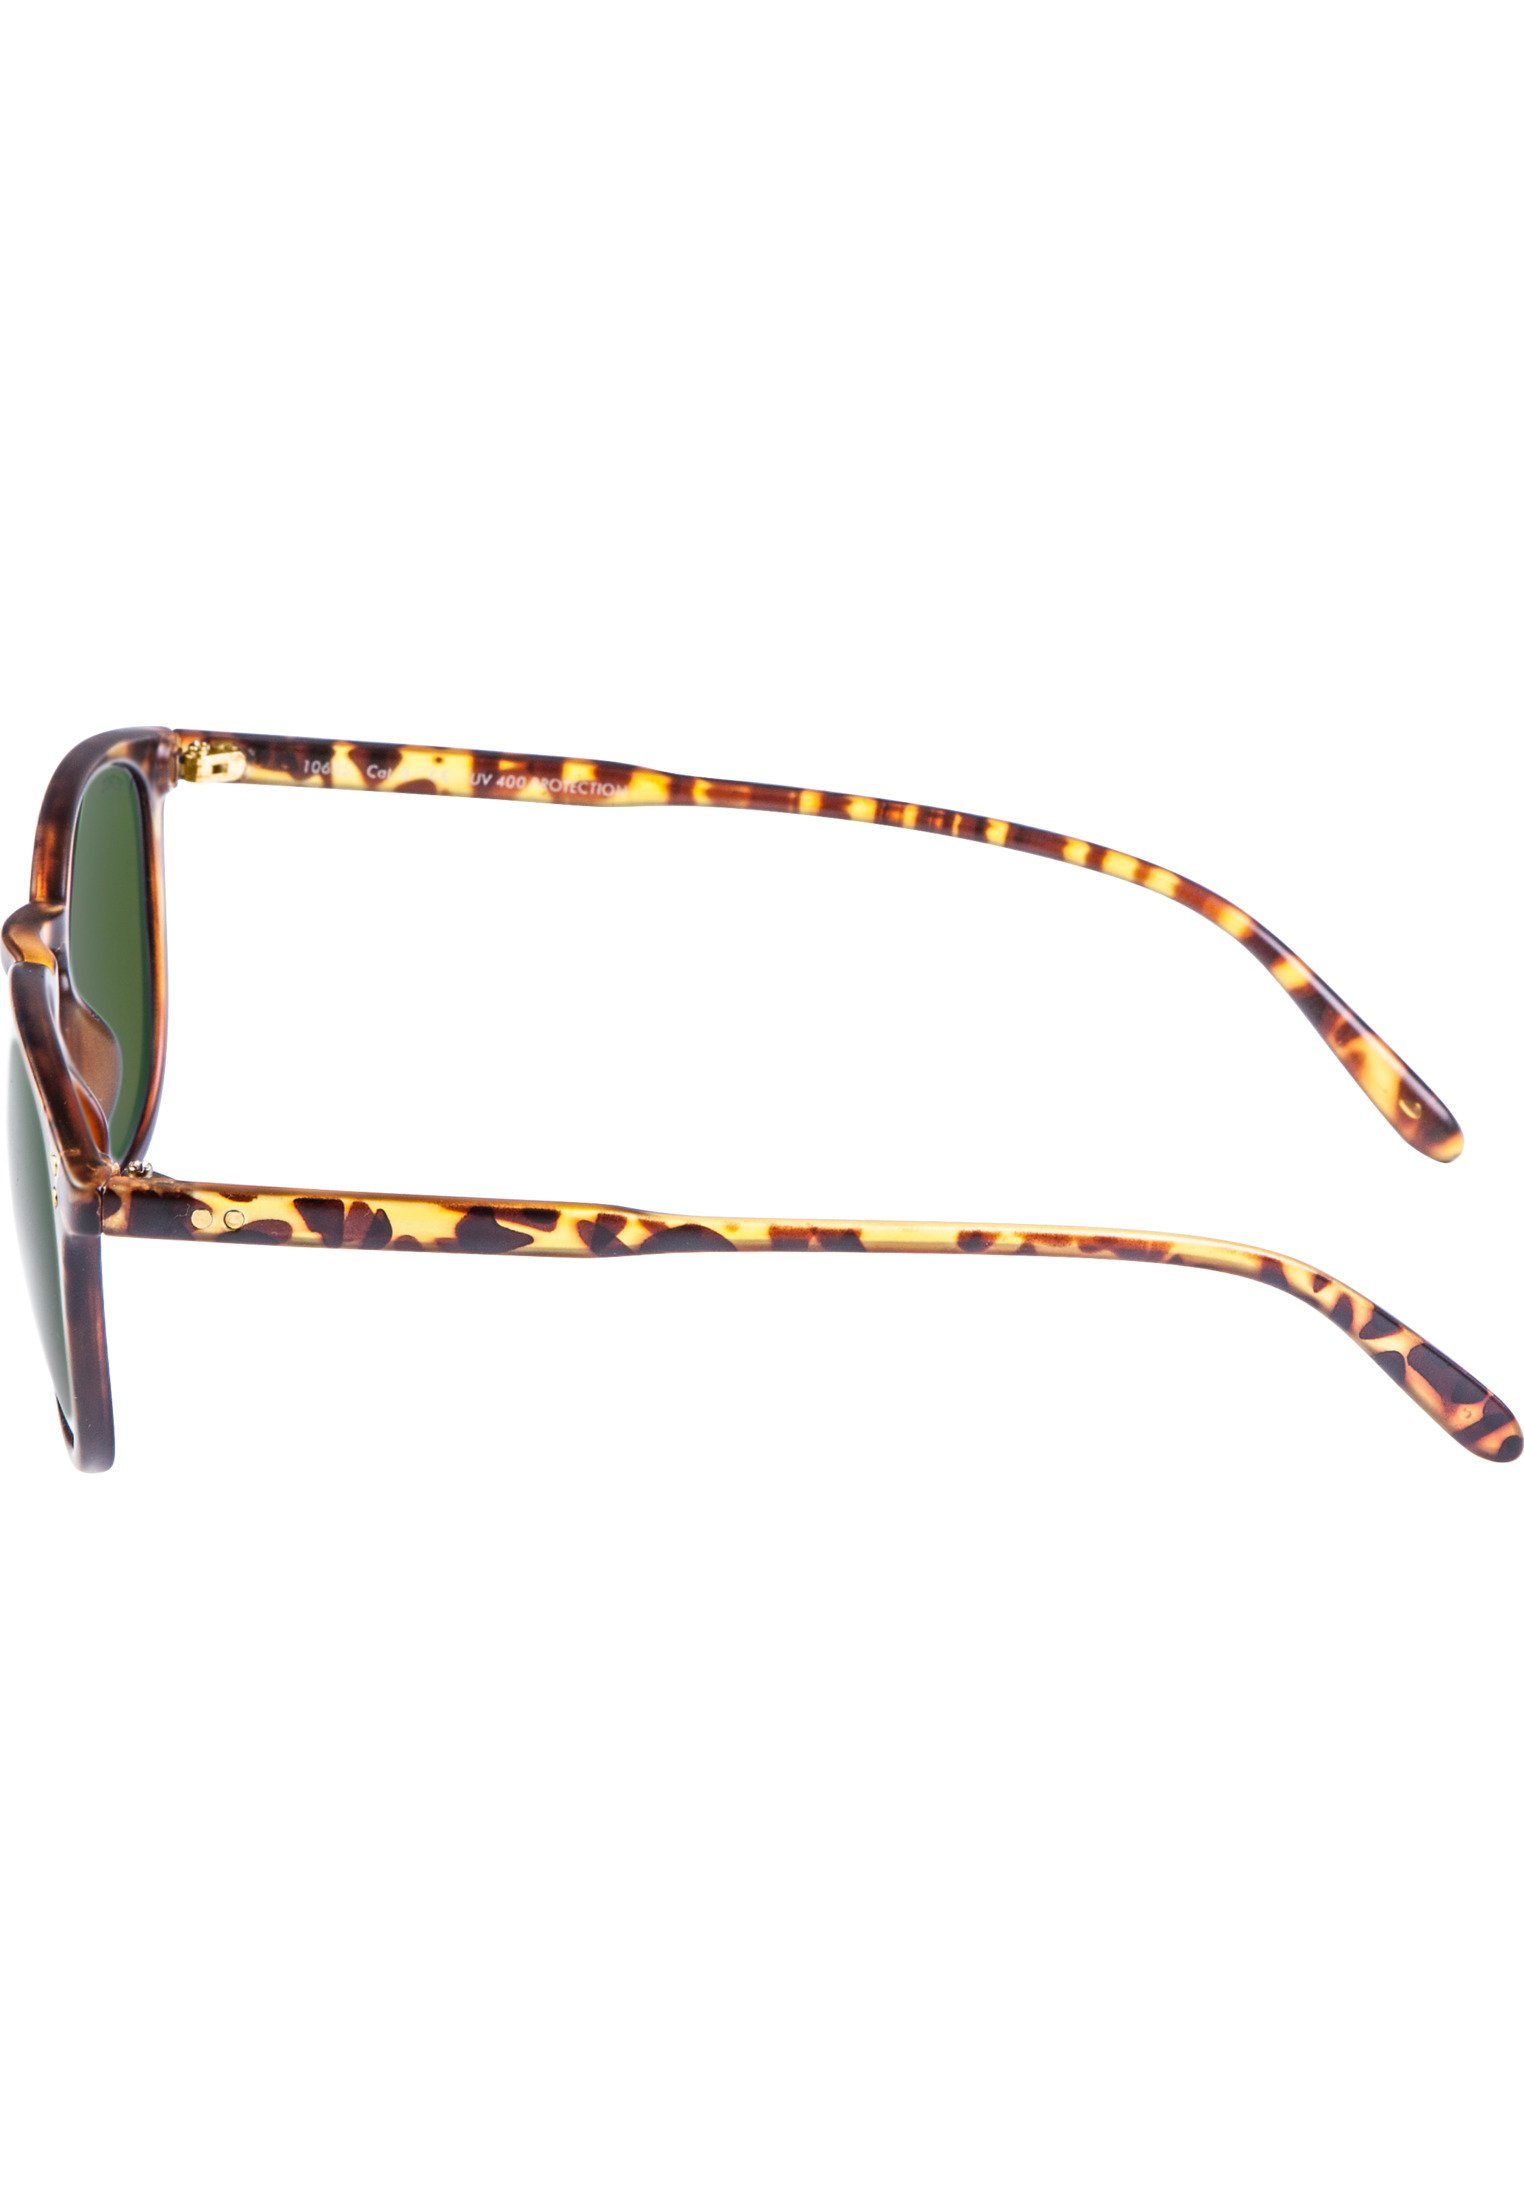 Sonnenbrille Arthur Sunglasses Accessoires MSTRDS havanna/green